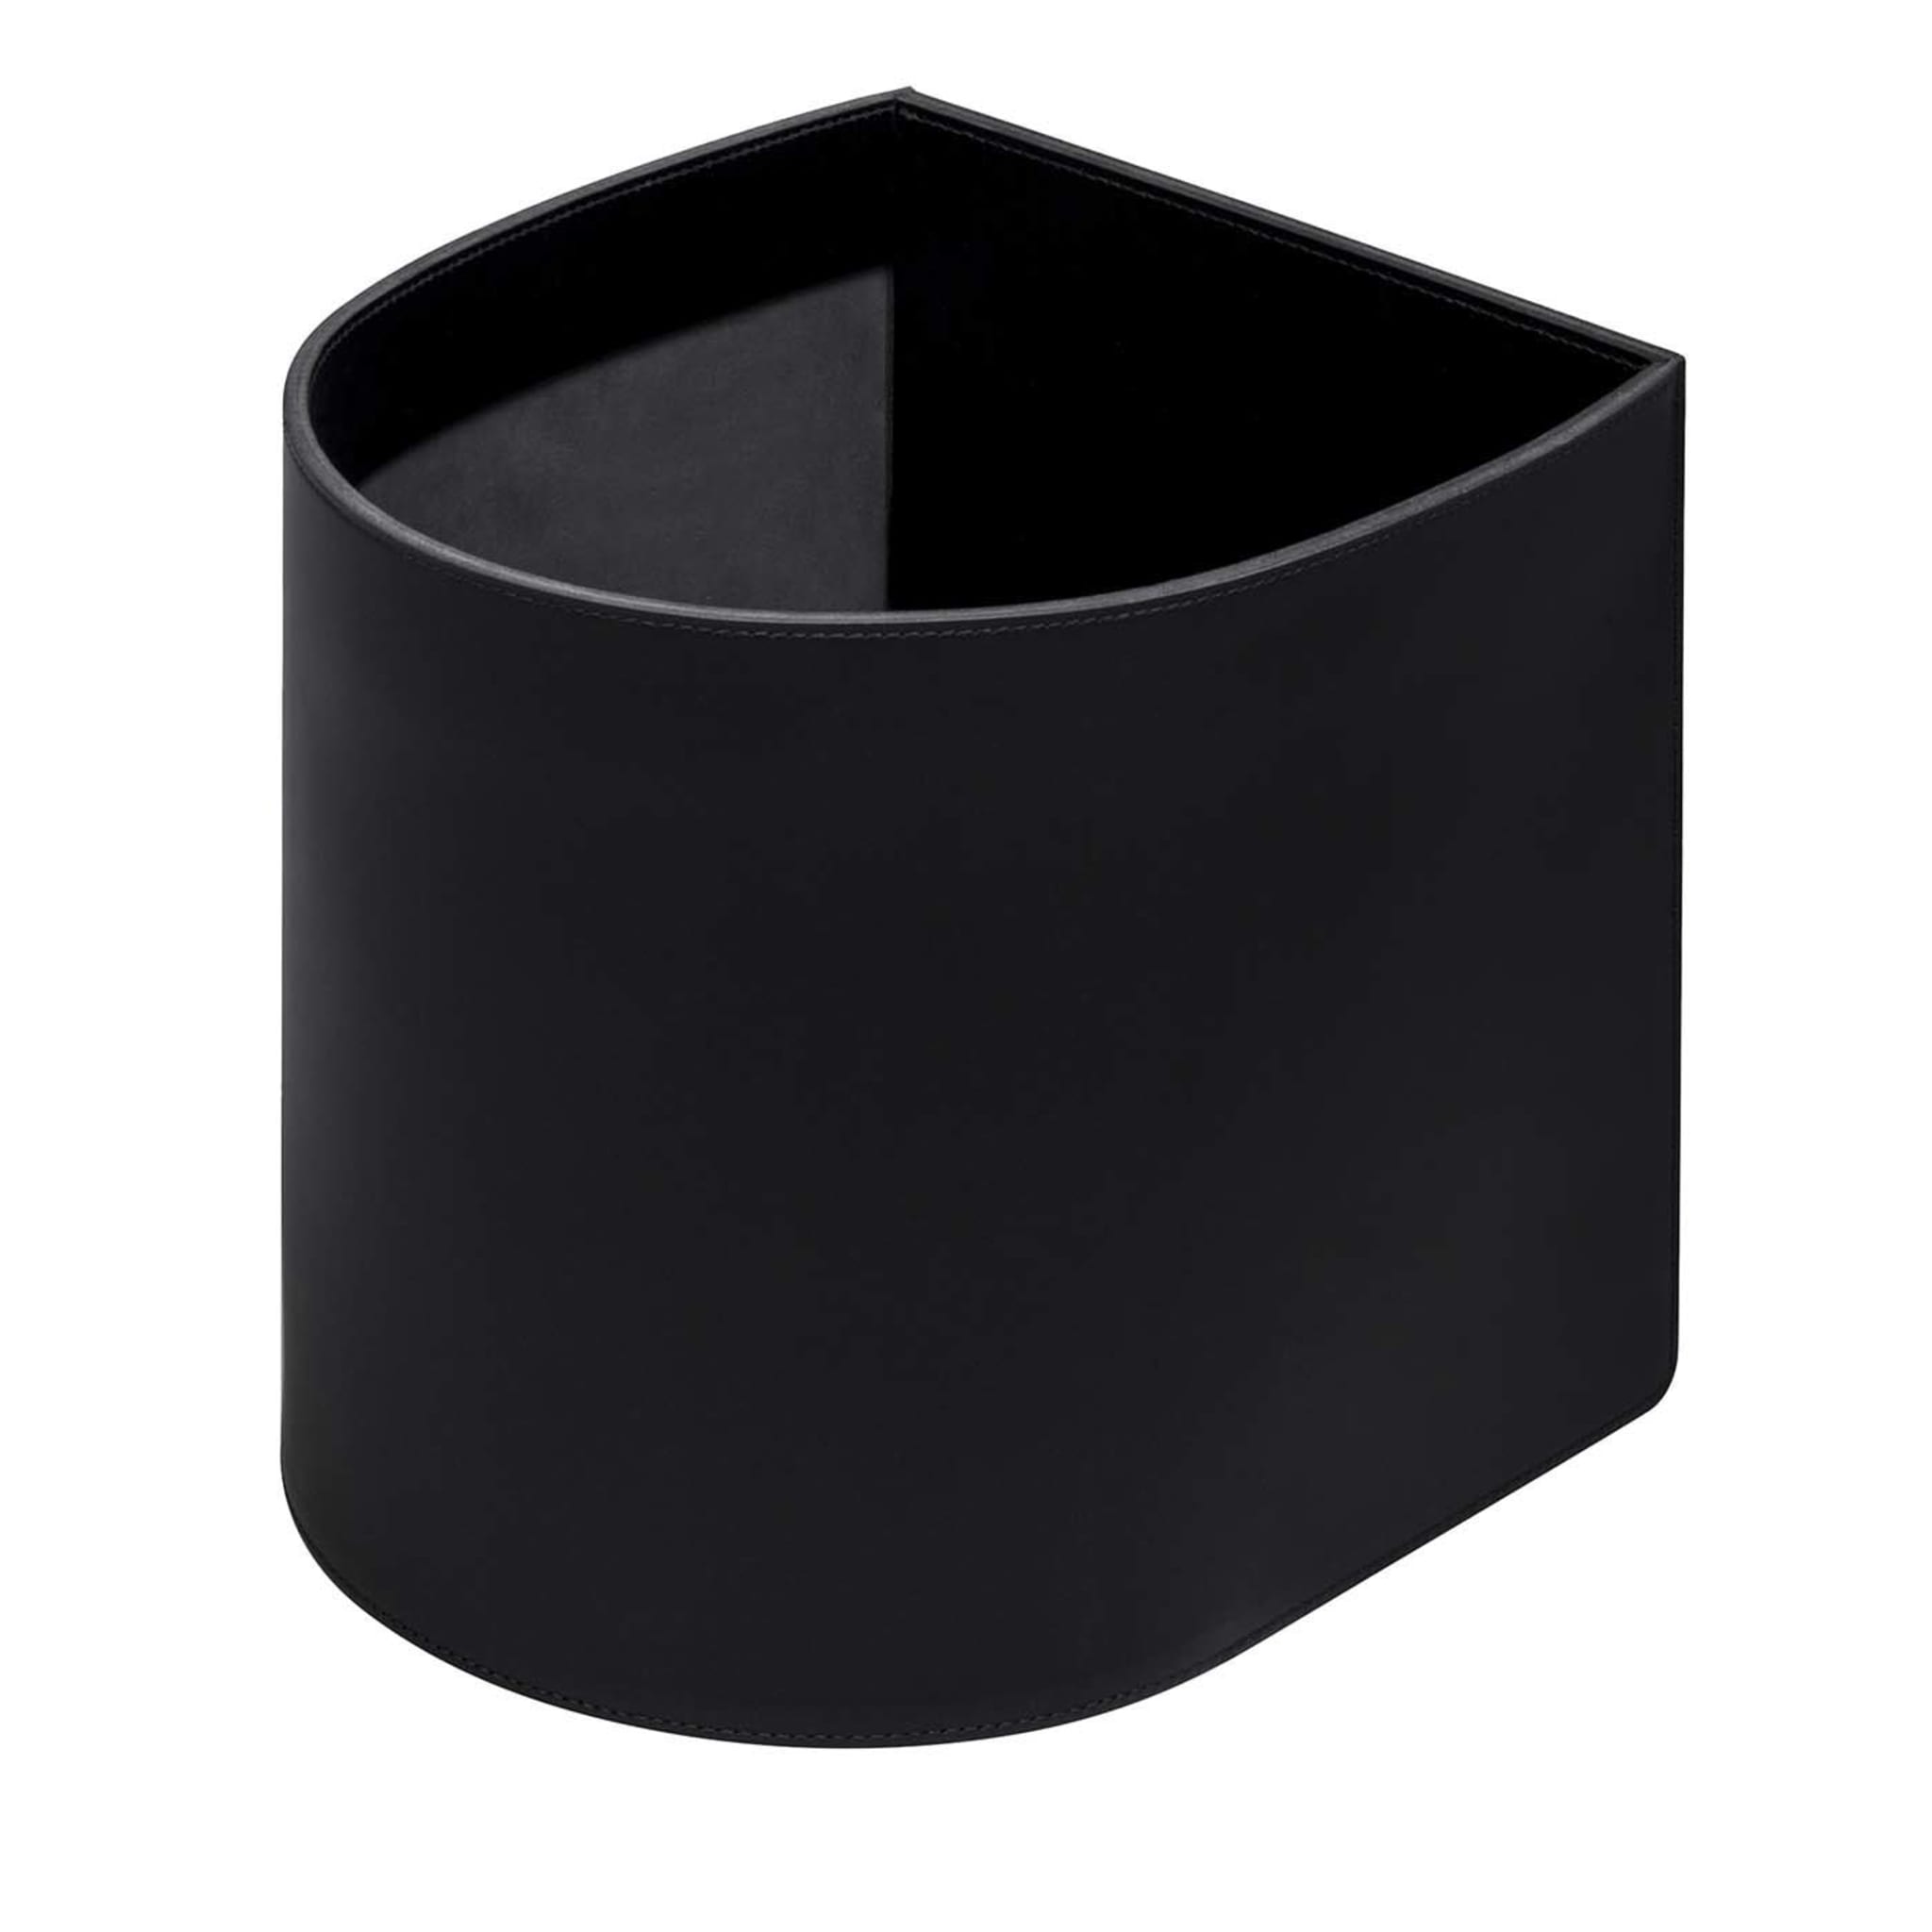 Staffa Halbmond-Papierkorb aus schwarzem Leder - Hauptansicht